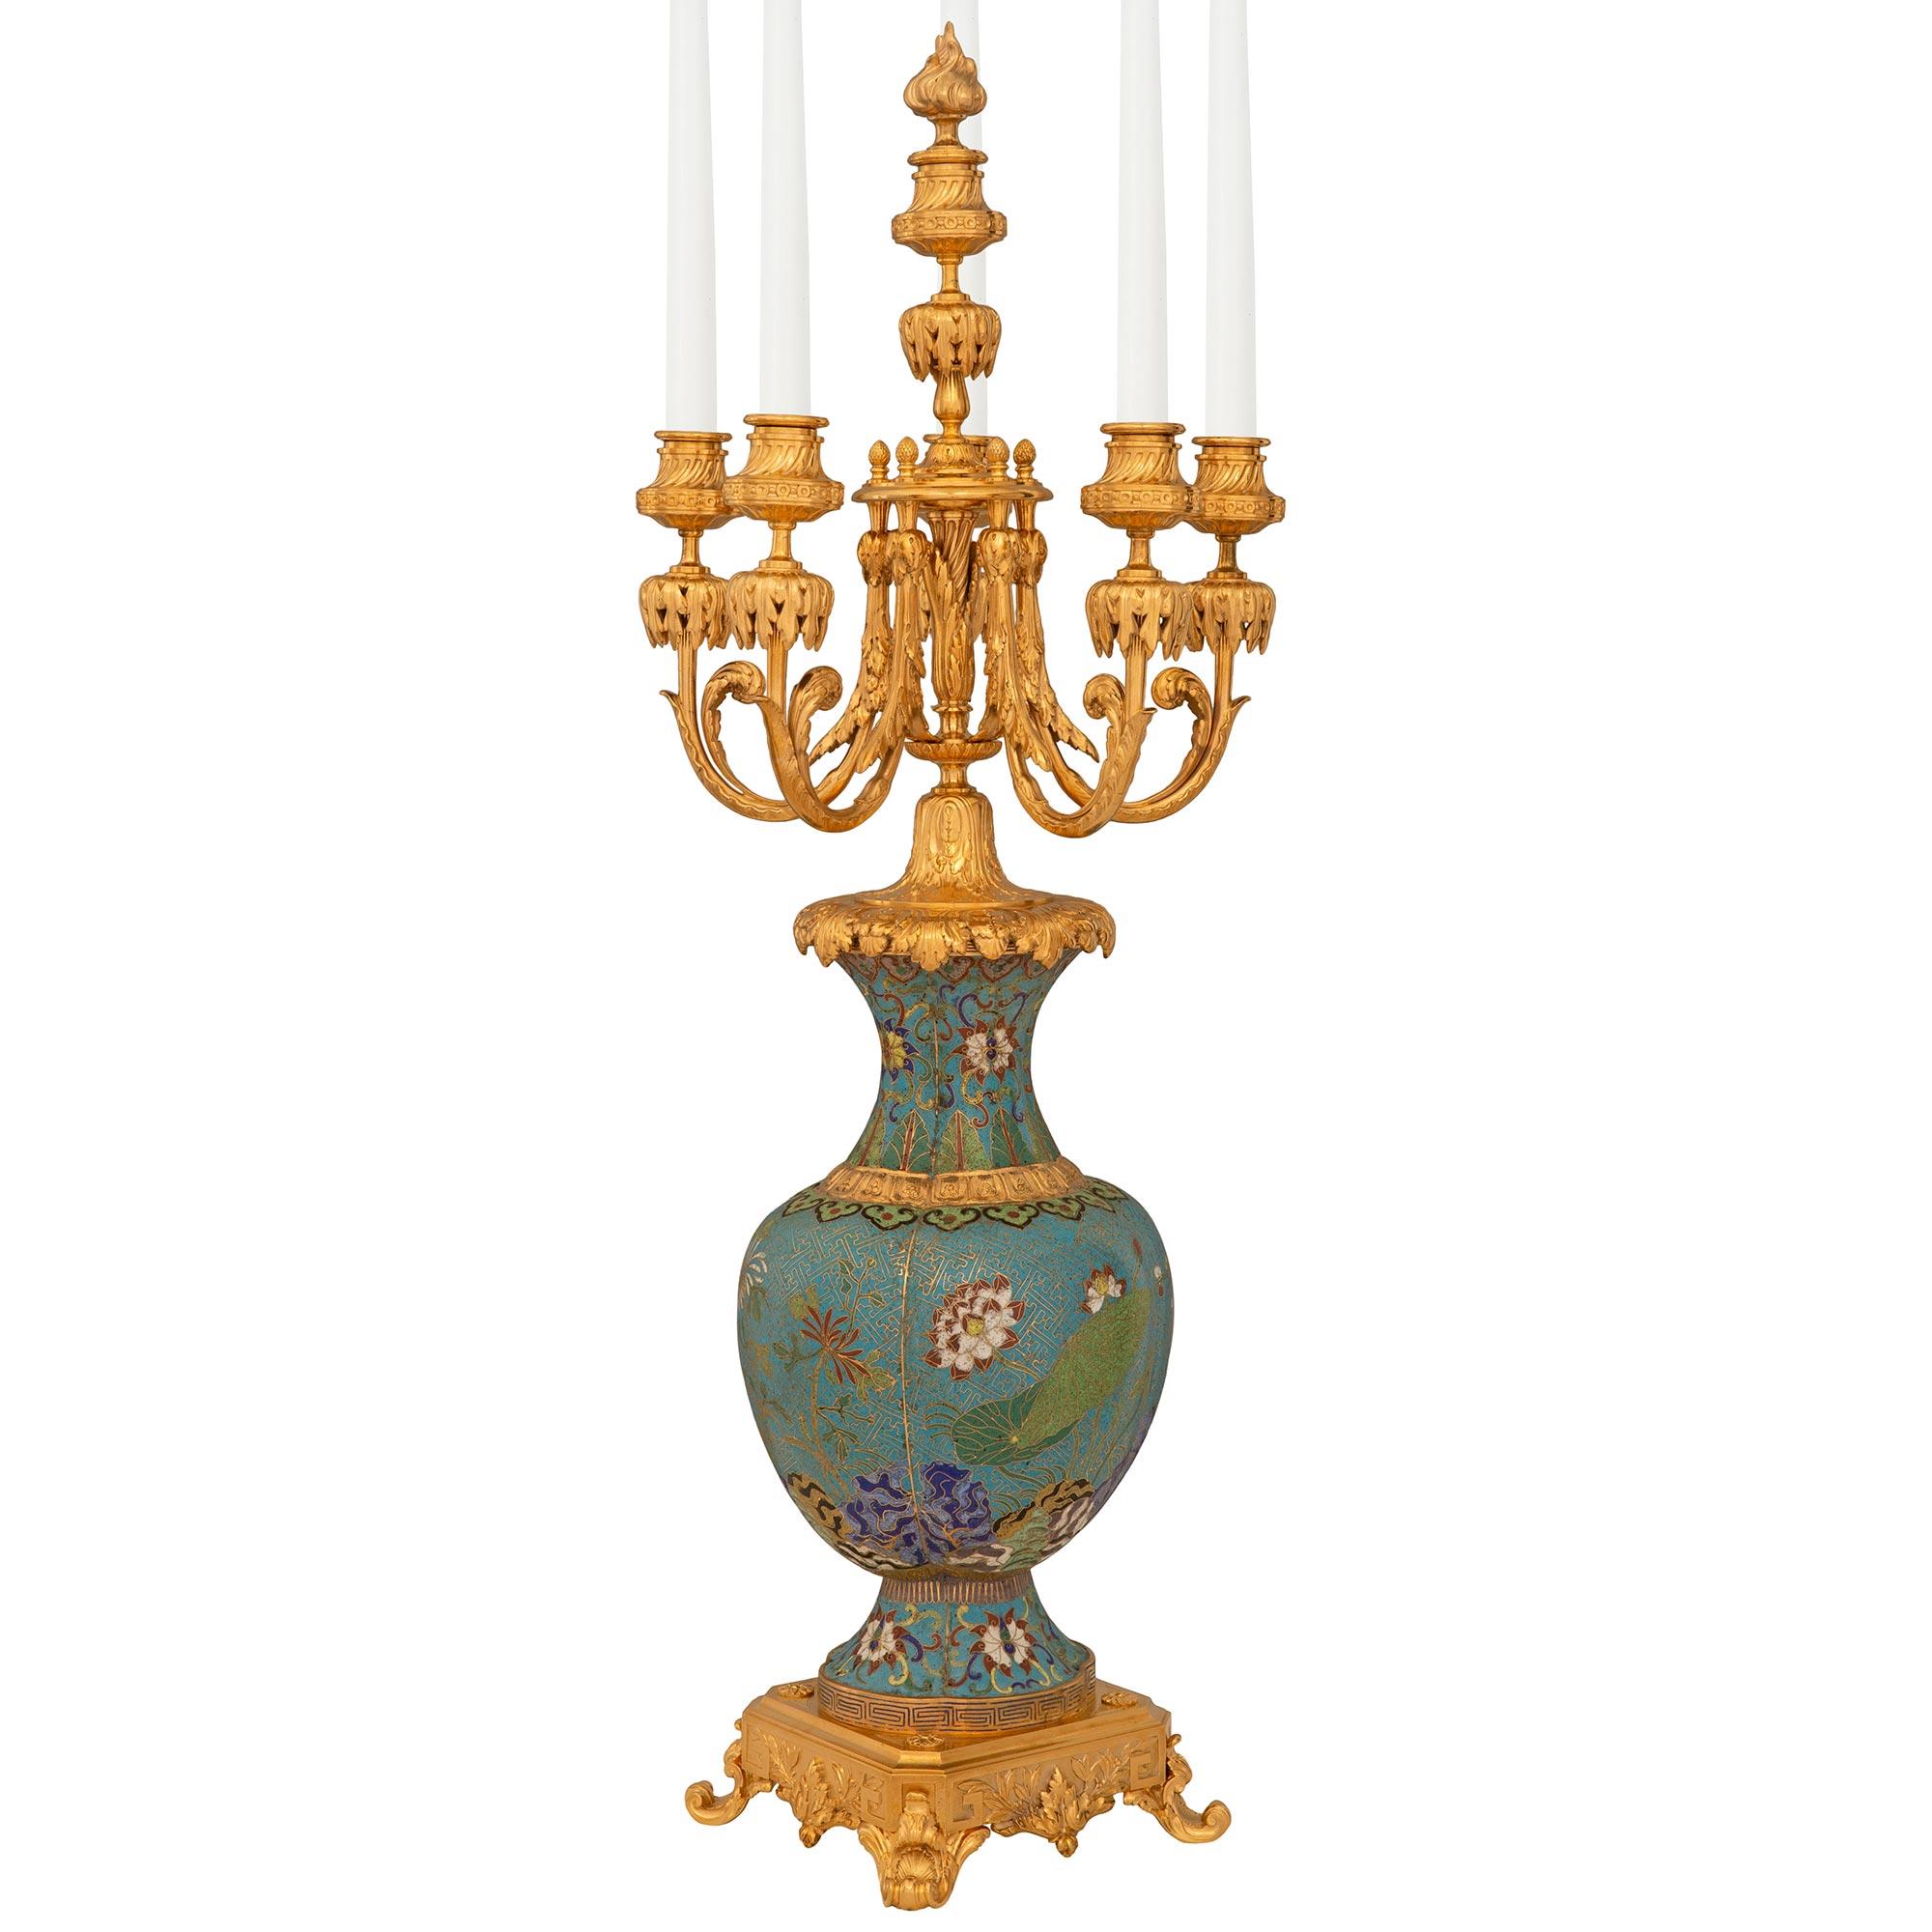 Paire de candélabres en cloisonné et bronze doré de style Louis XV, signée F. Barbedienne. Chaque candélabre à six bras est soutenu par un piédestal carré en bronze doré orné de motifs de clés grecques, de vignes de laurier et de réserves centrales